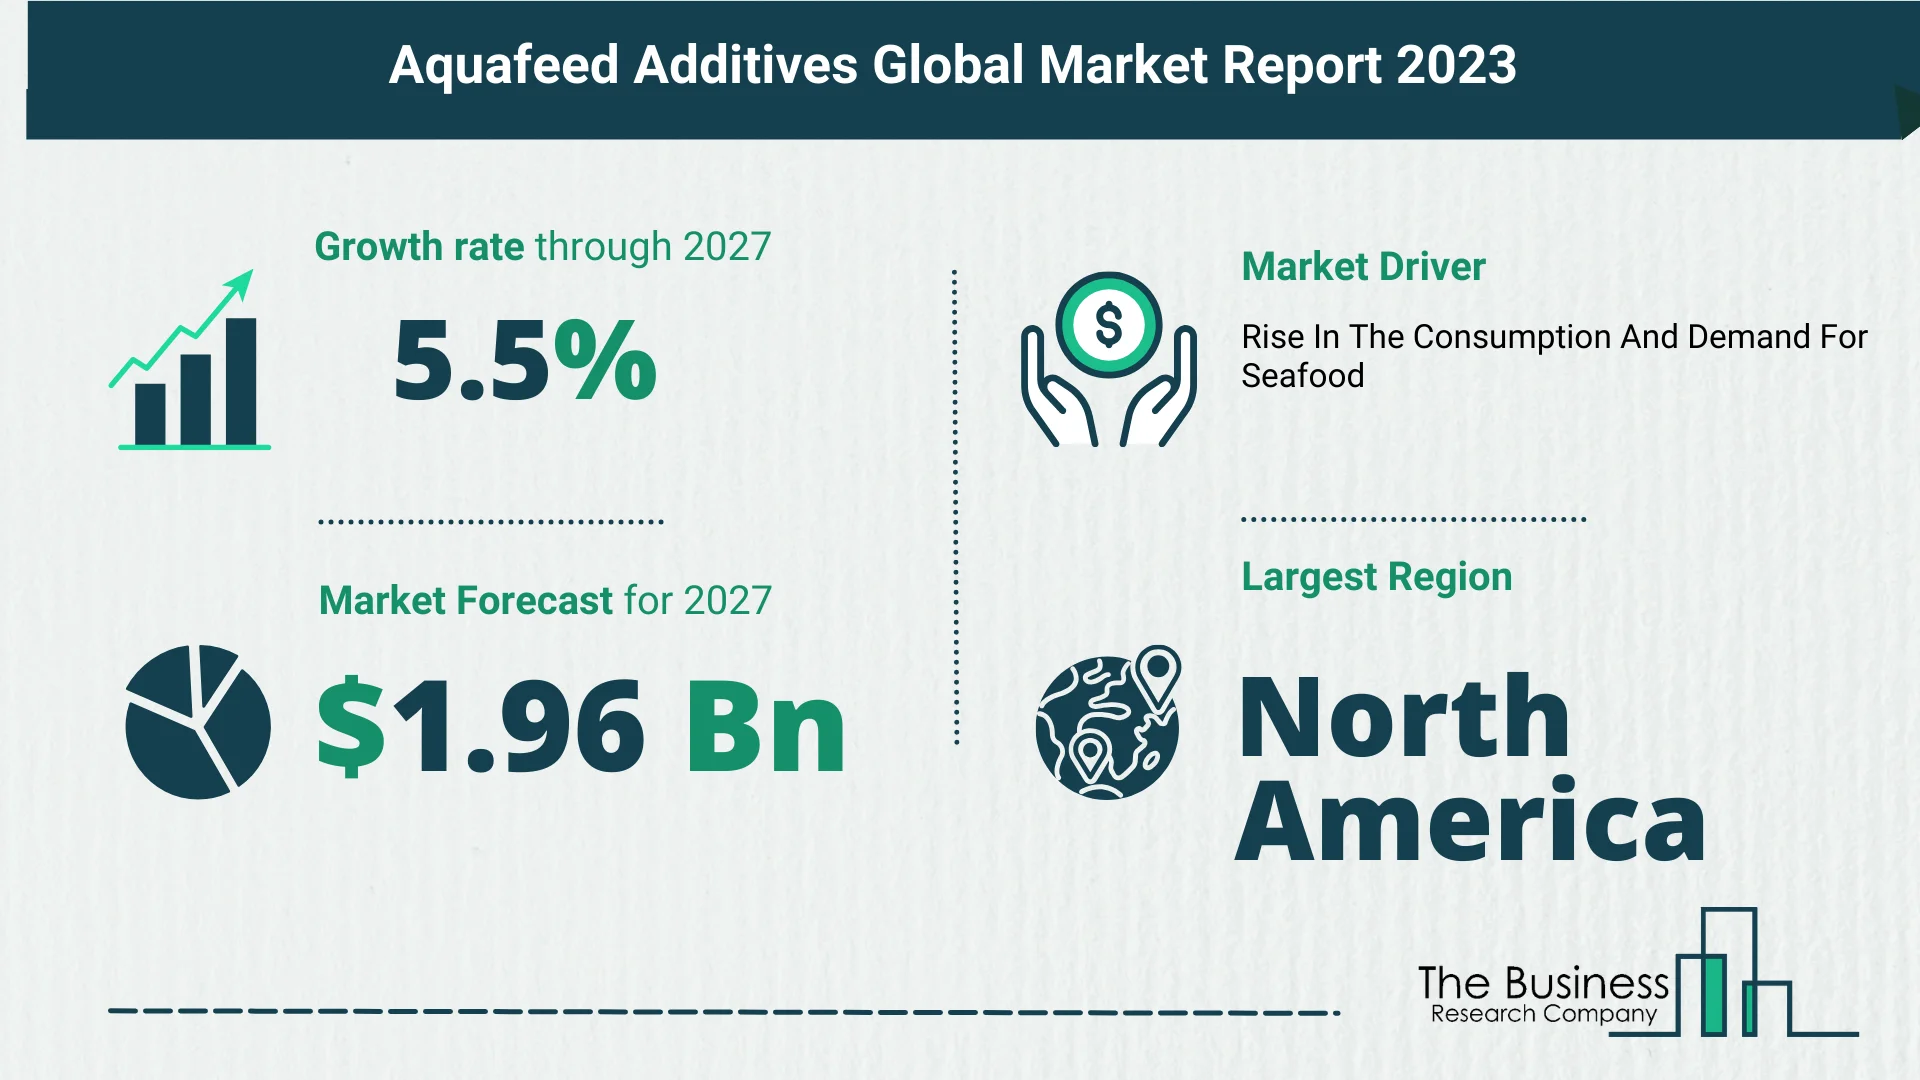 Global Aquafeed Additives Market Size